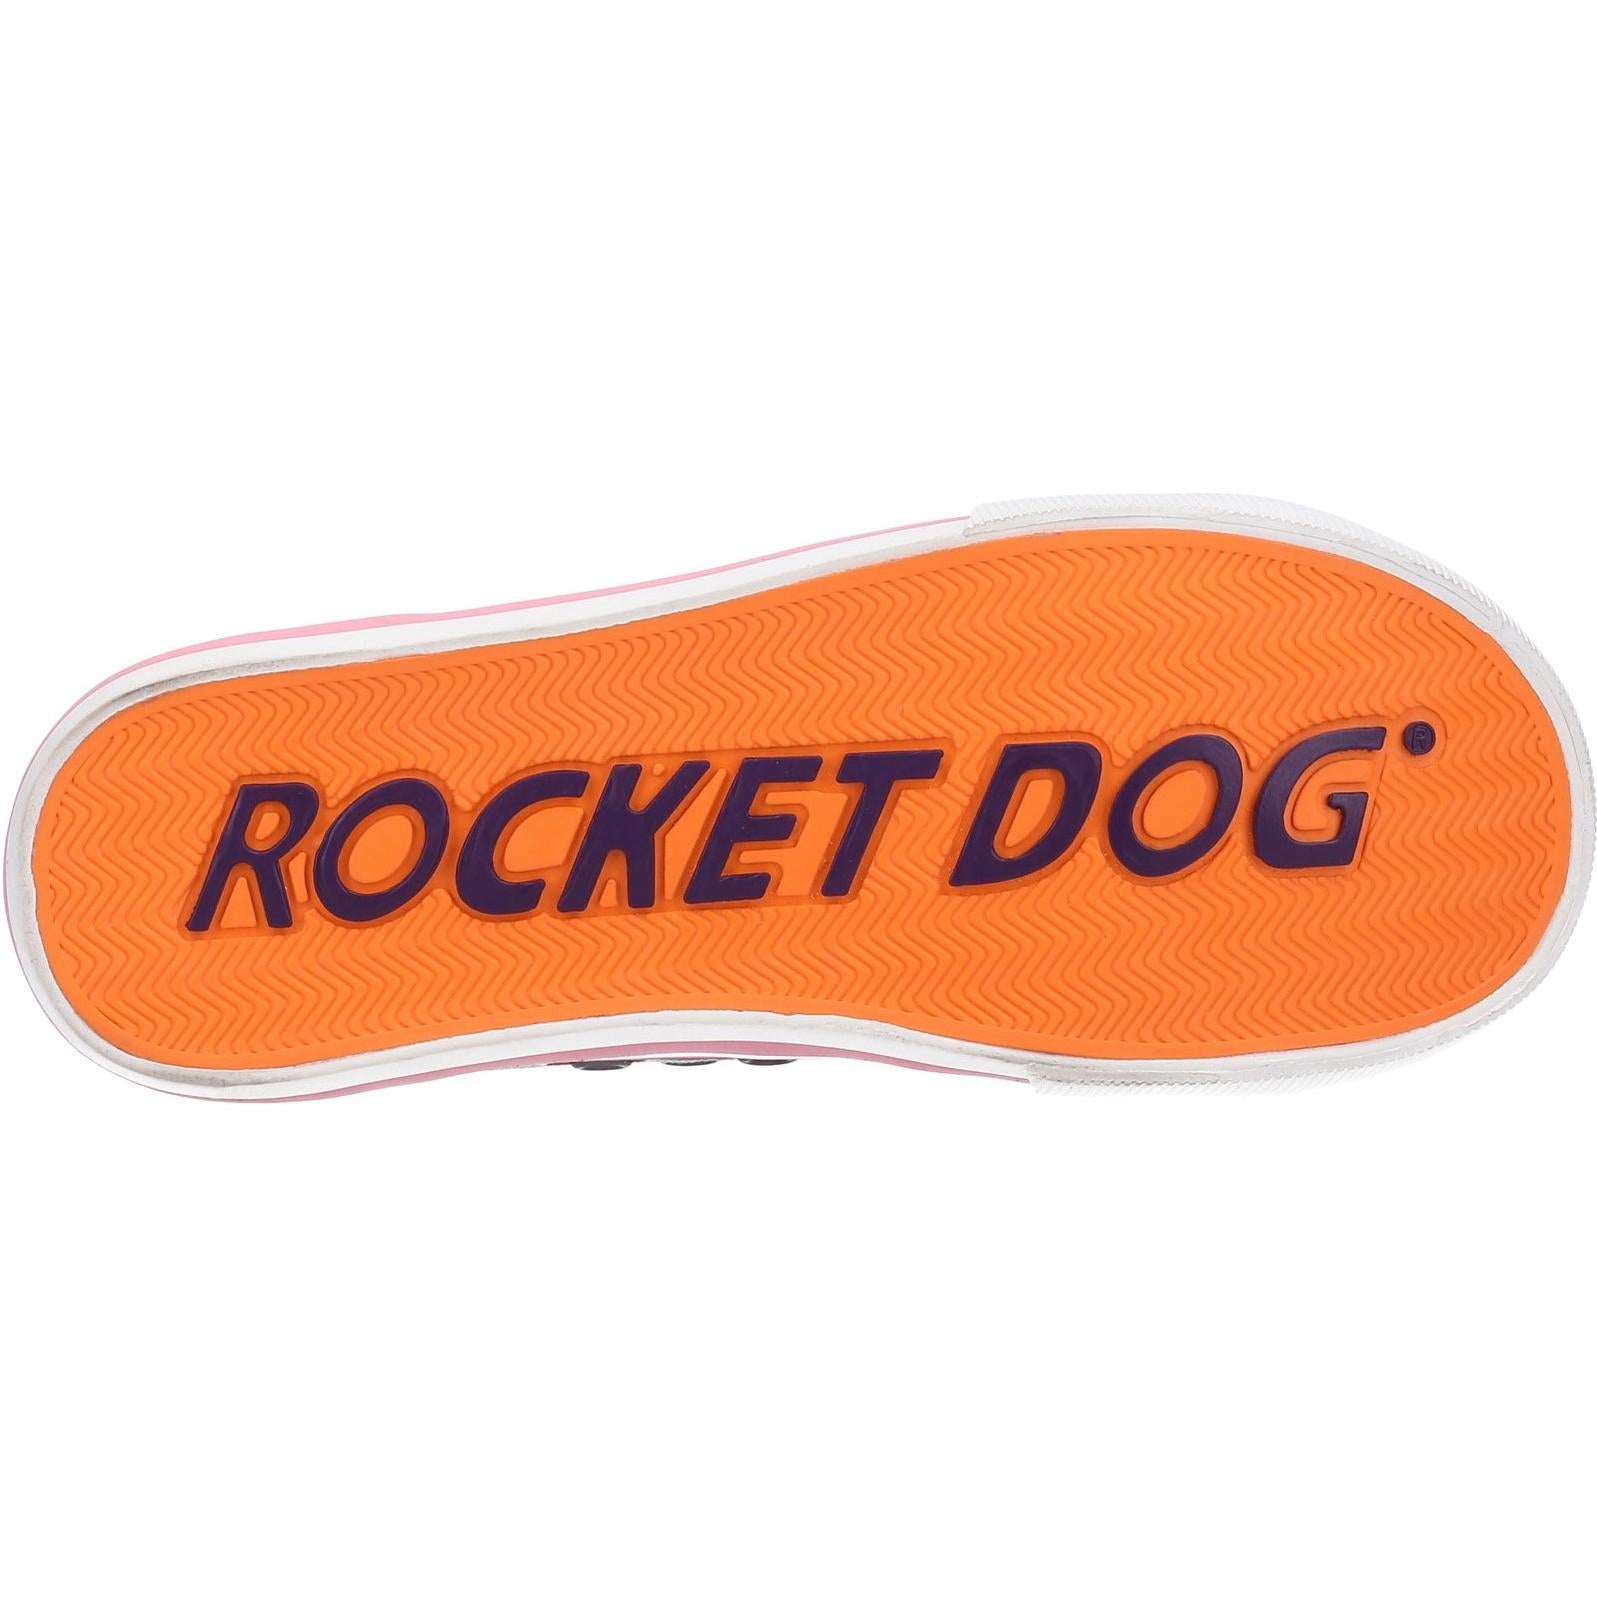 Rocket Dog Rocket Dog Jazzin Jixel Sneaker Trainers